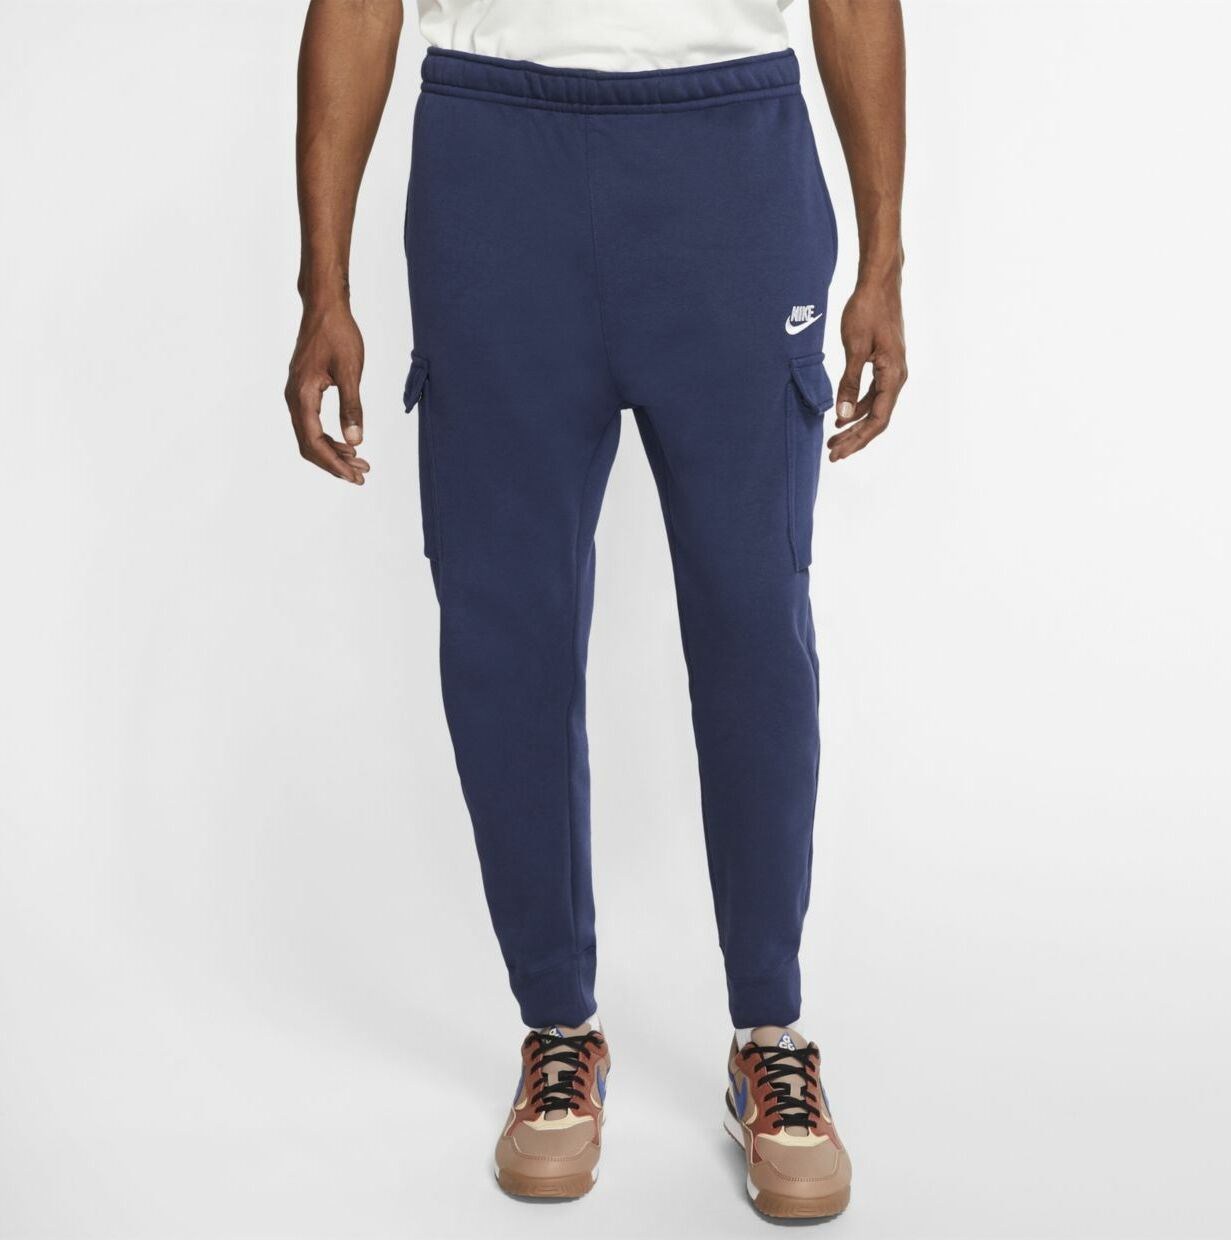 Спортивные брюки мужские Nike M Sportswear Club Fleece Cargo Pants синие, спортивные брюки, синий, хлопок; полиэстер  - купить